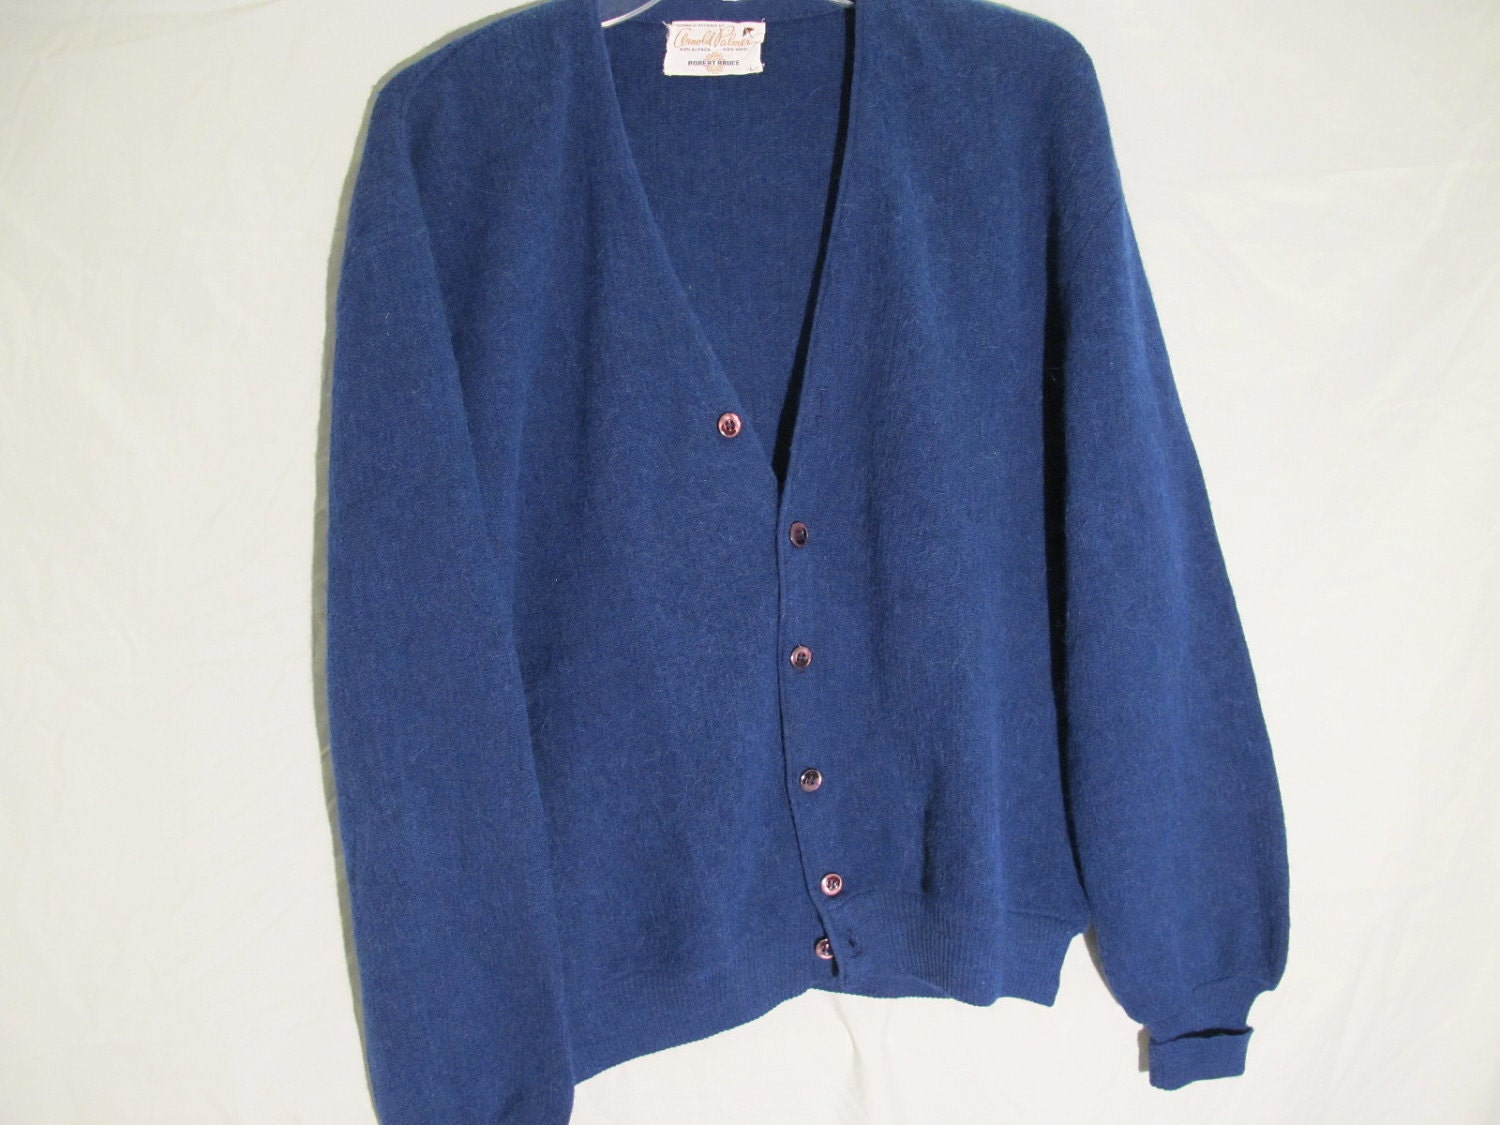 SALE Vintage Arnold Palmer Cardigan Sweater for Men in BLUE